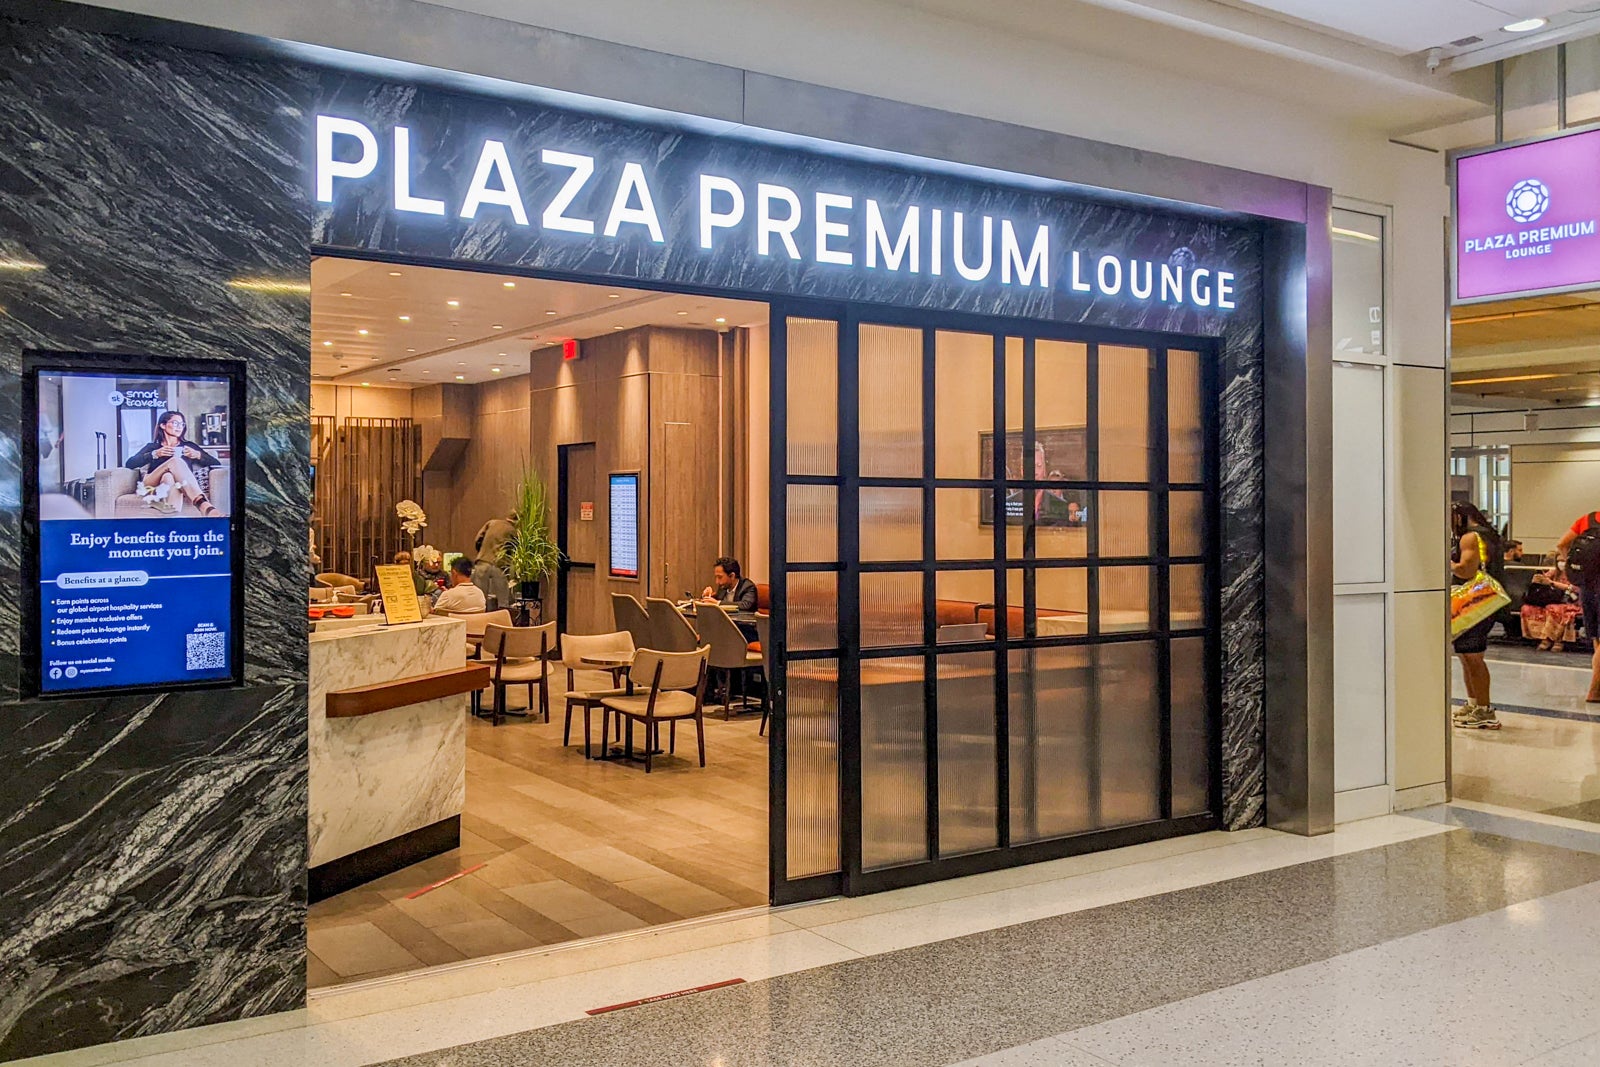 DFW Plaza Premium Lounge